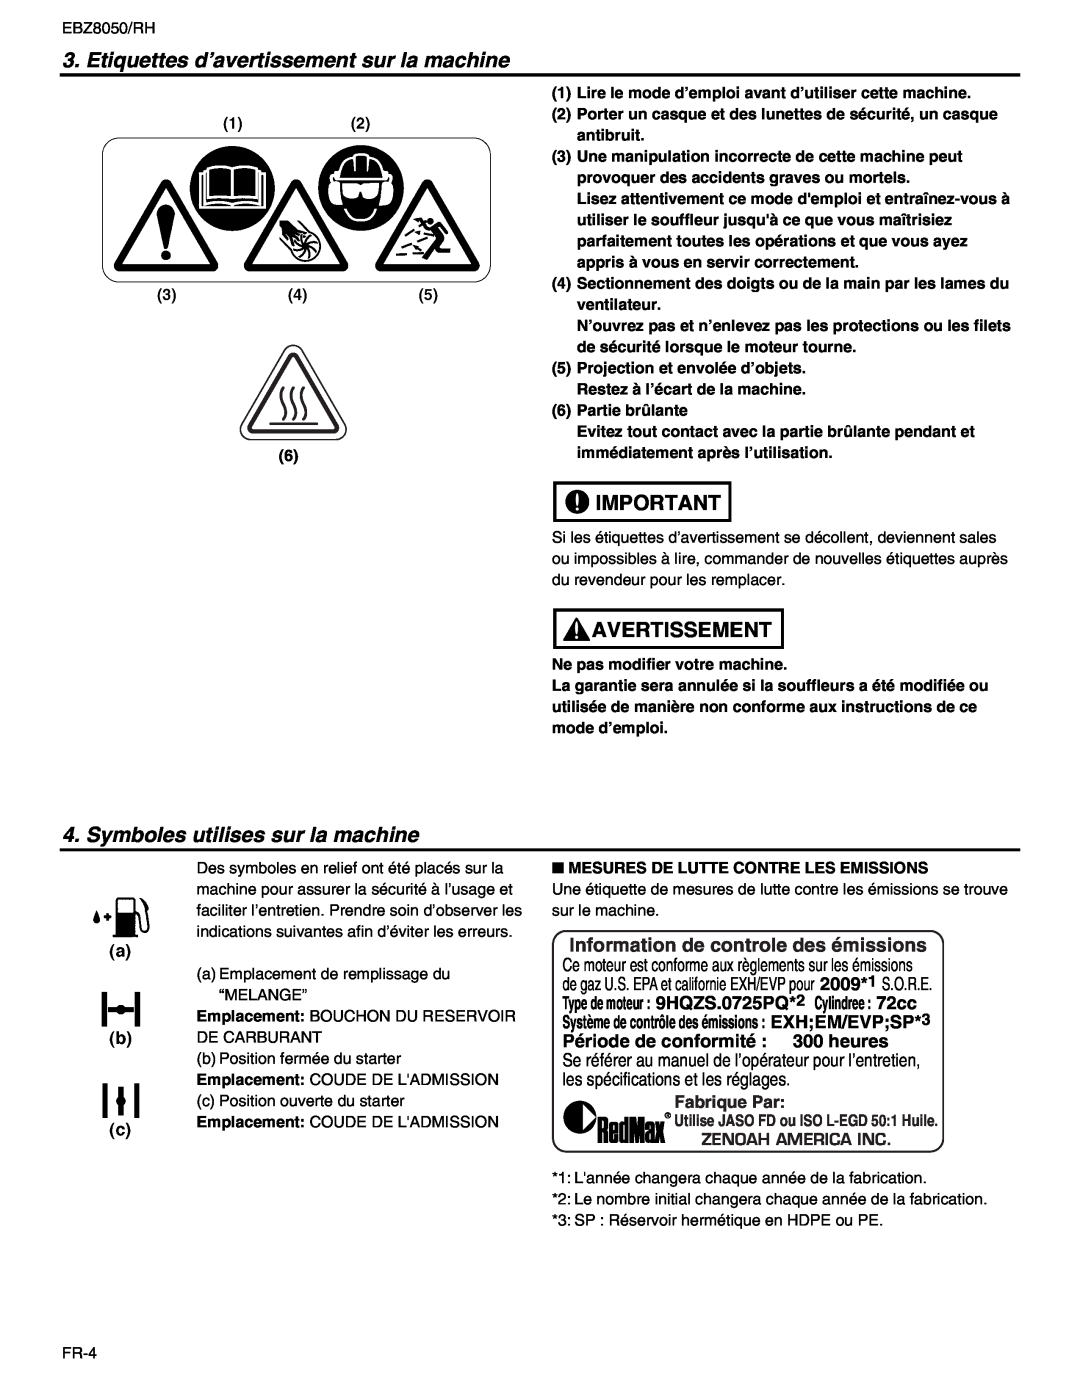 RedMax EBZ8050 Etiquettes d’avertissement sur la machine, Symboles utilises sur la machine, Fabrique Par, Avertissement 